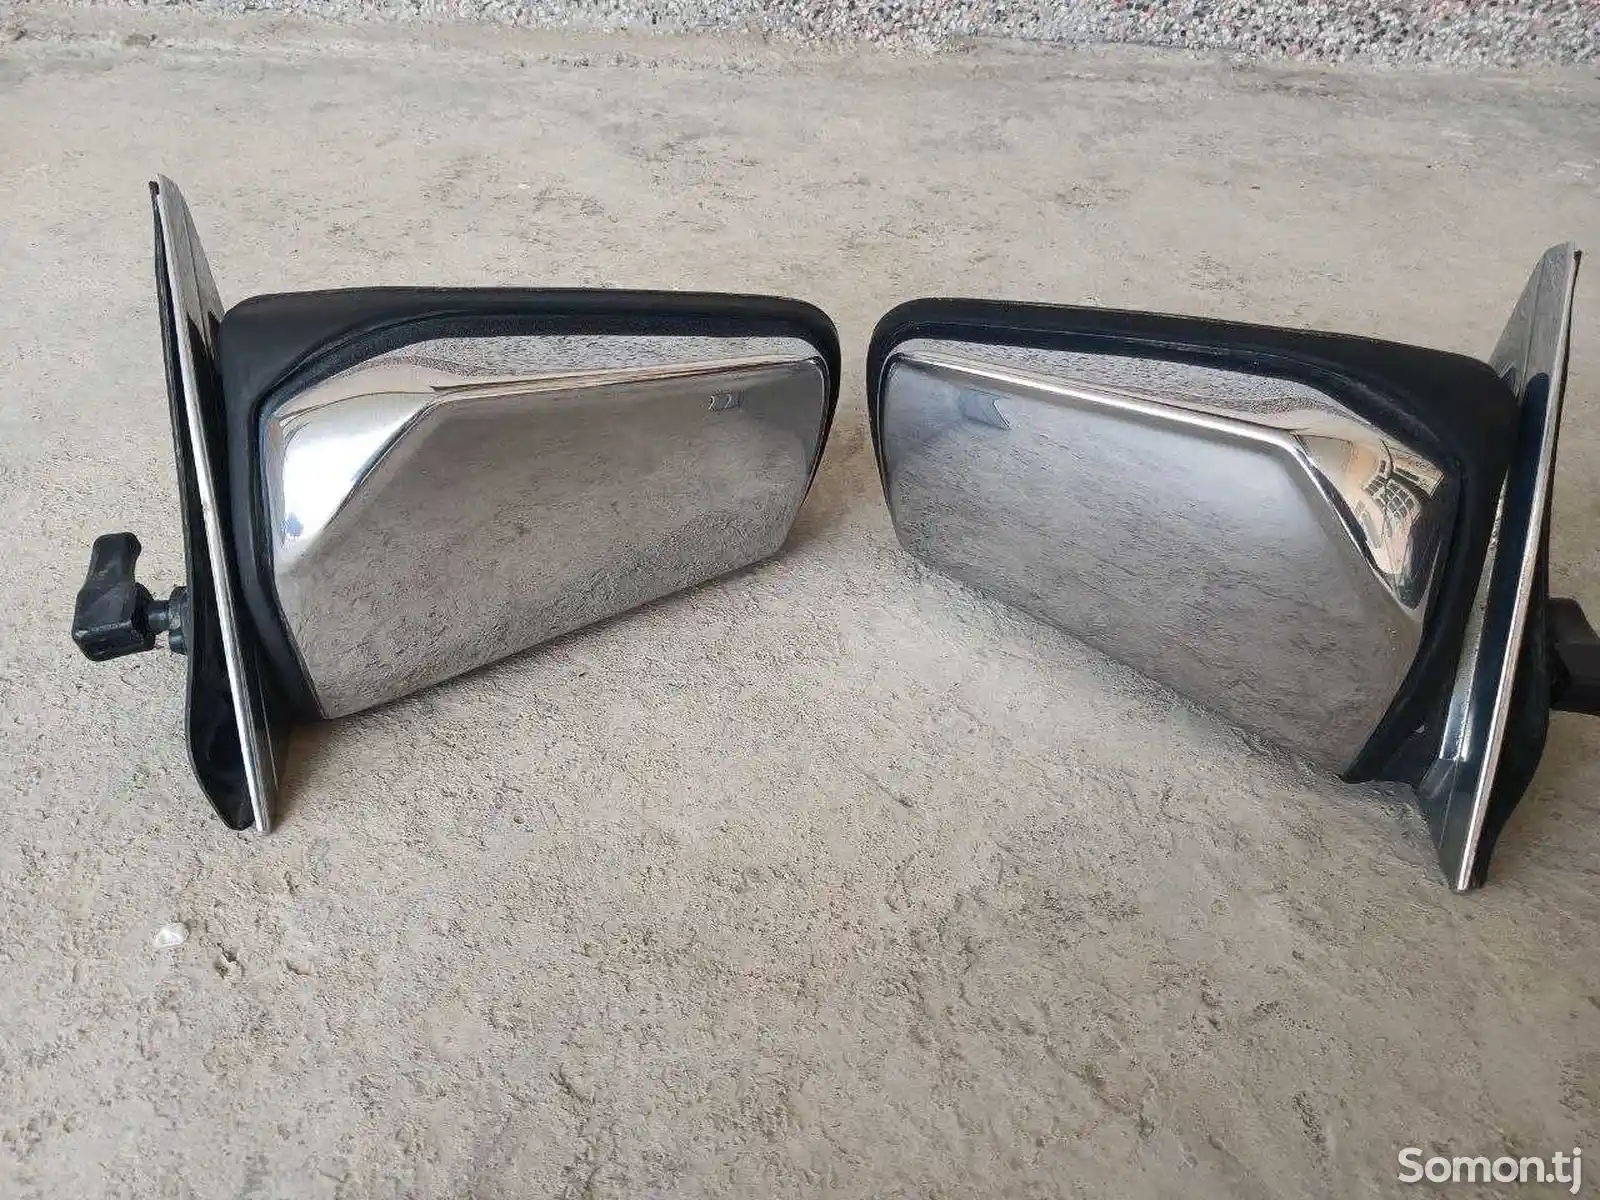 Зеркала заднего вида от Mercedes-Benz W123 и W124-1